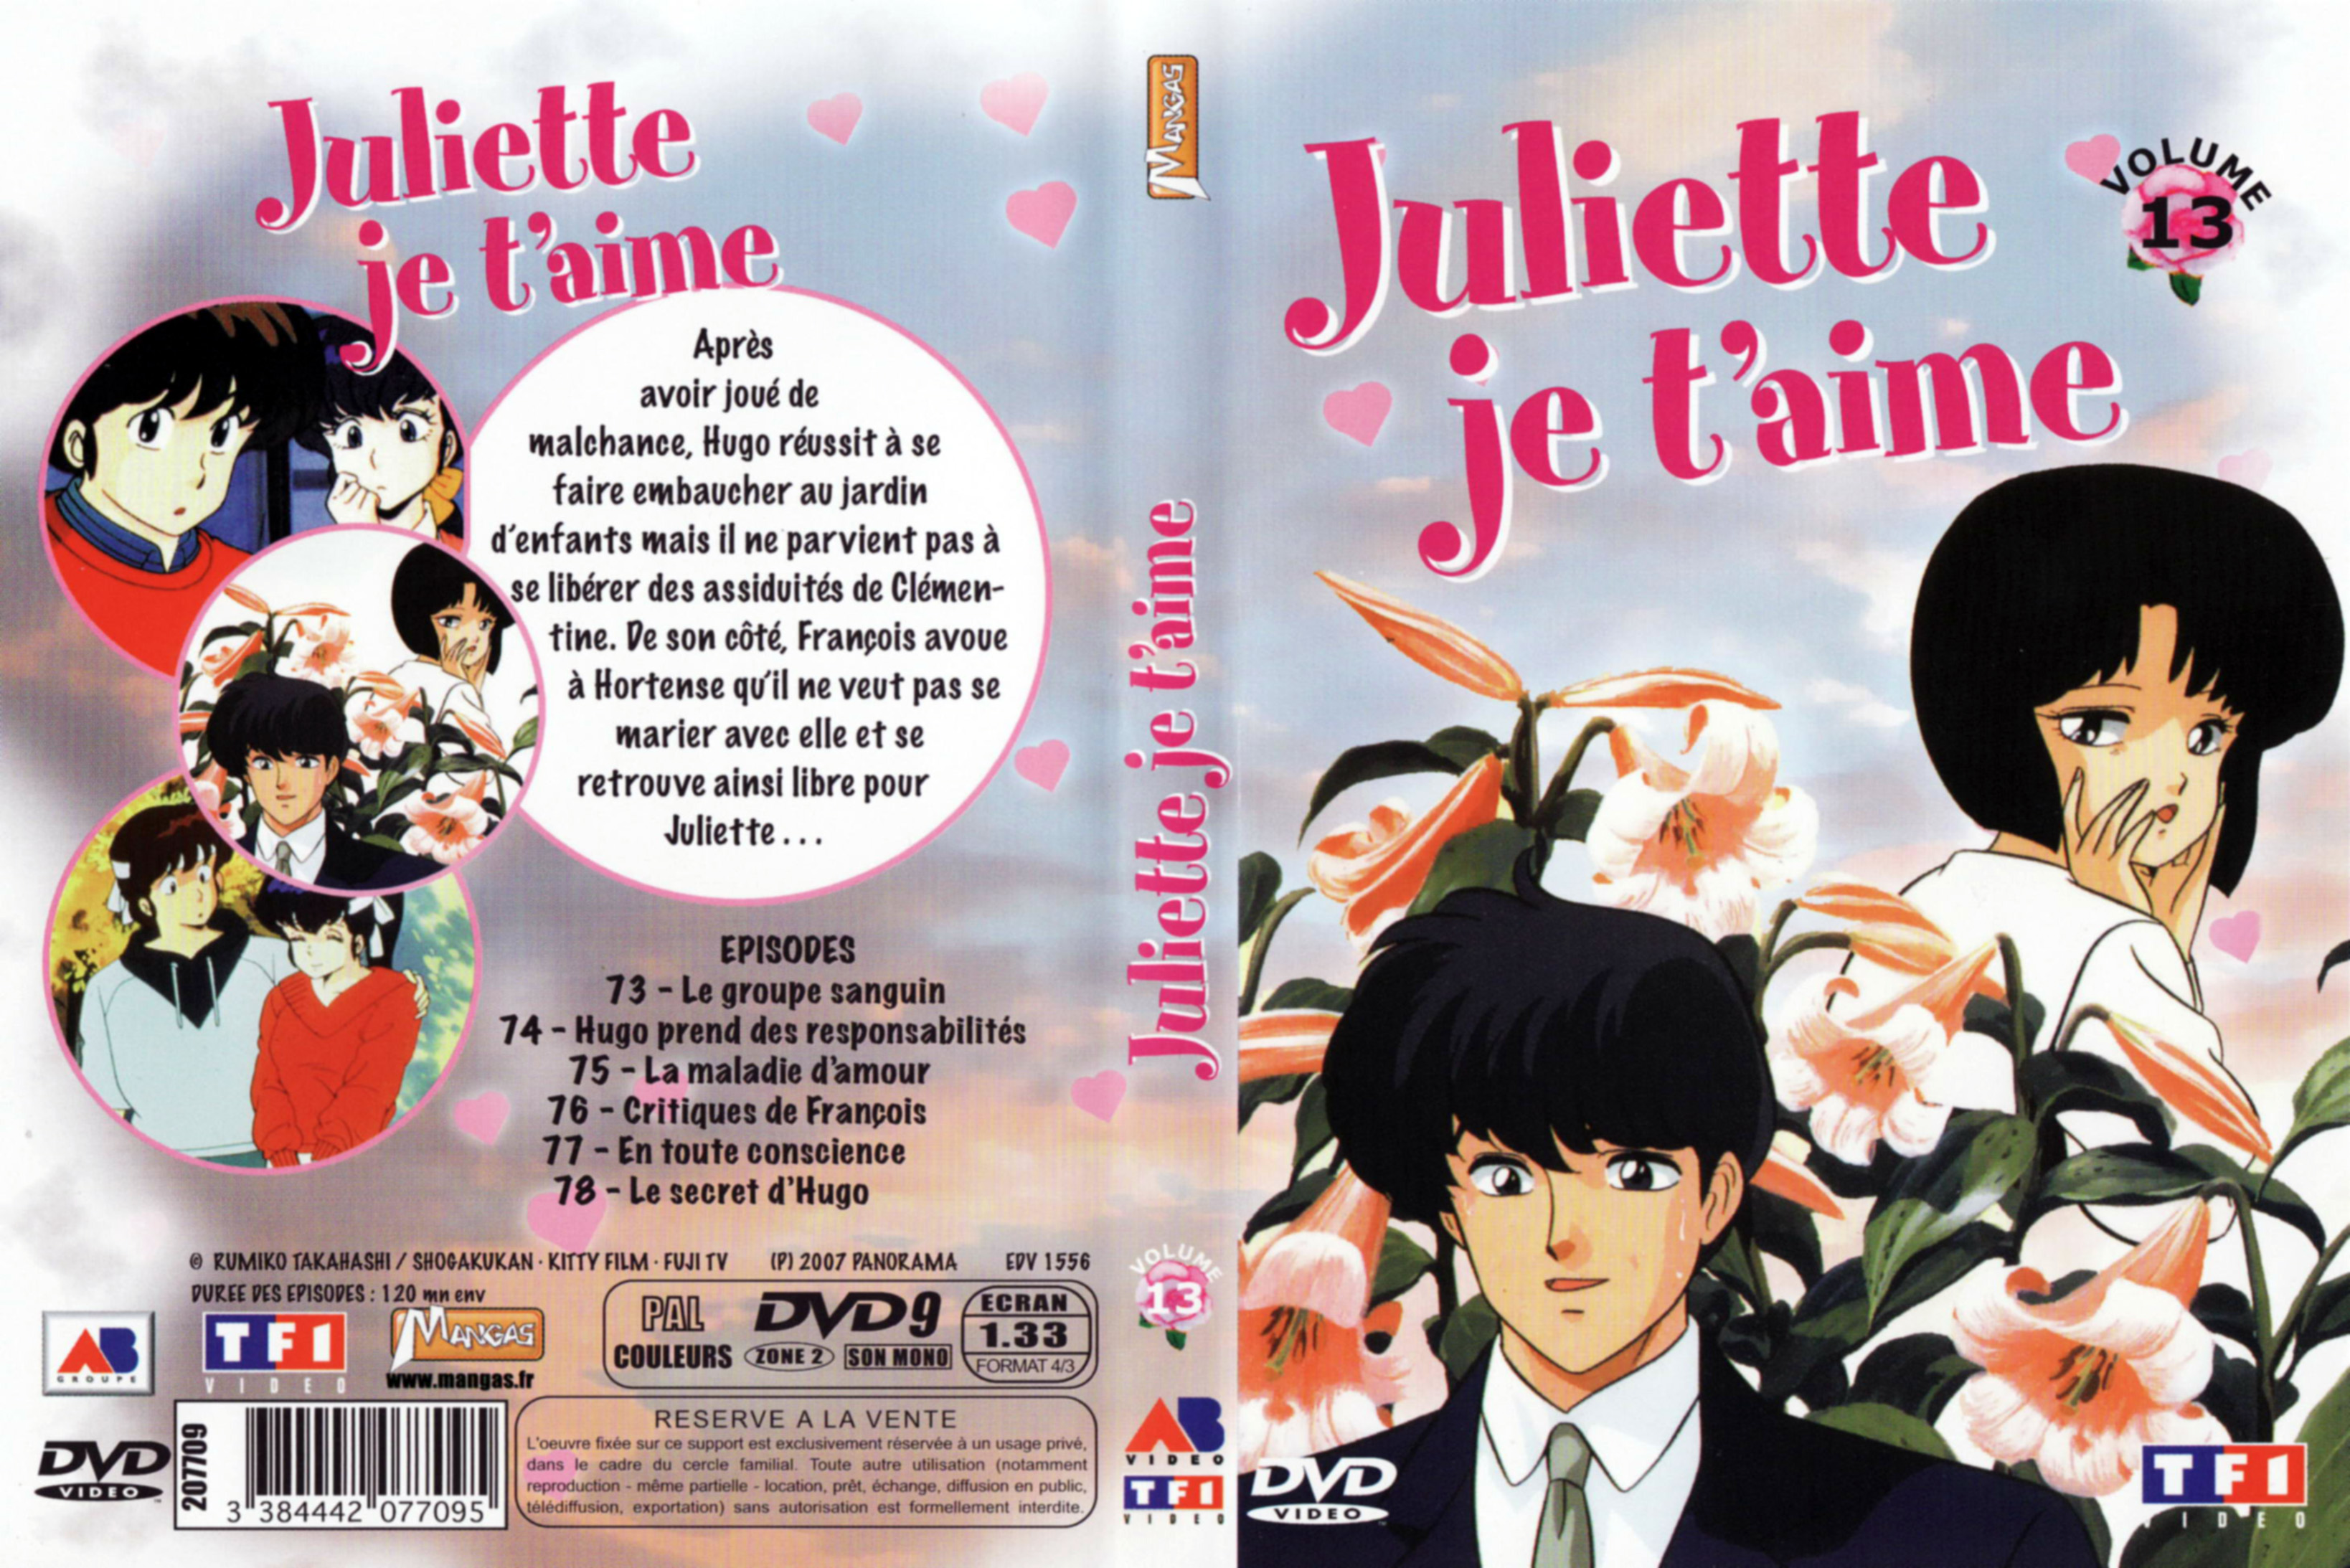 Jaquette DVD Juliette je t aime vol 13